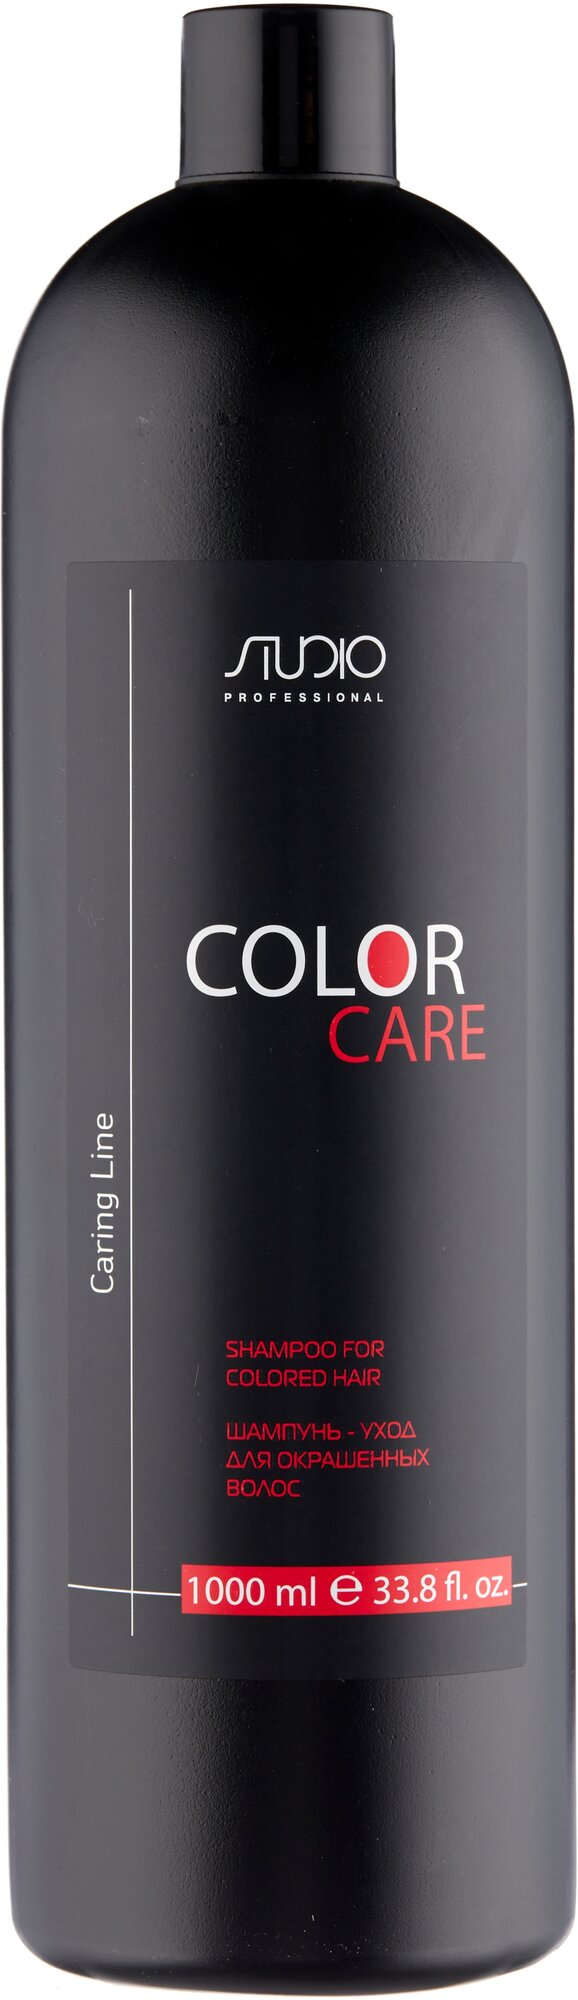 Бальзам KAPOUS для окрашенных волос Color Care серии Caring Line 1000 мл